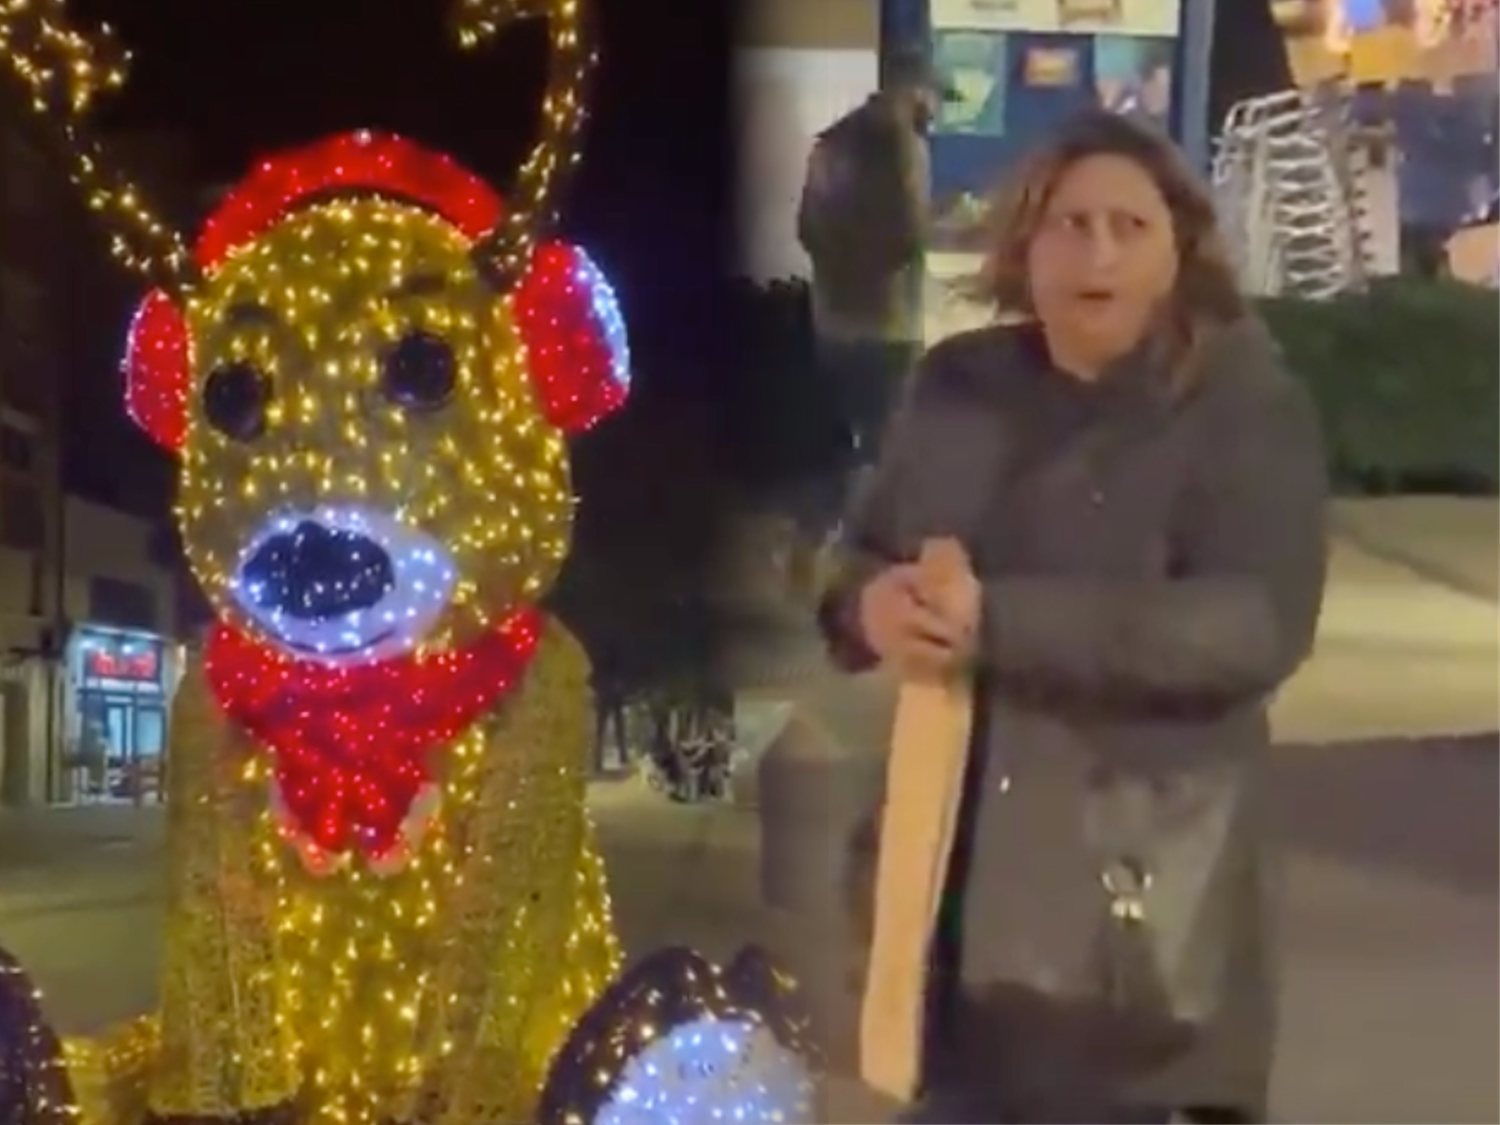 Hackean un reno navideño gigante en Viladecans:  "¡Viva España, muerte a los rojos!"